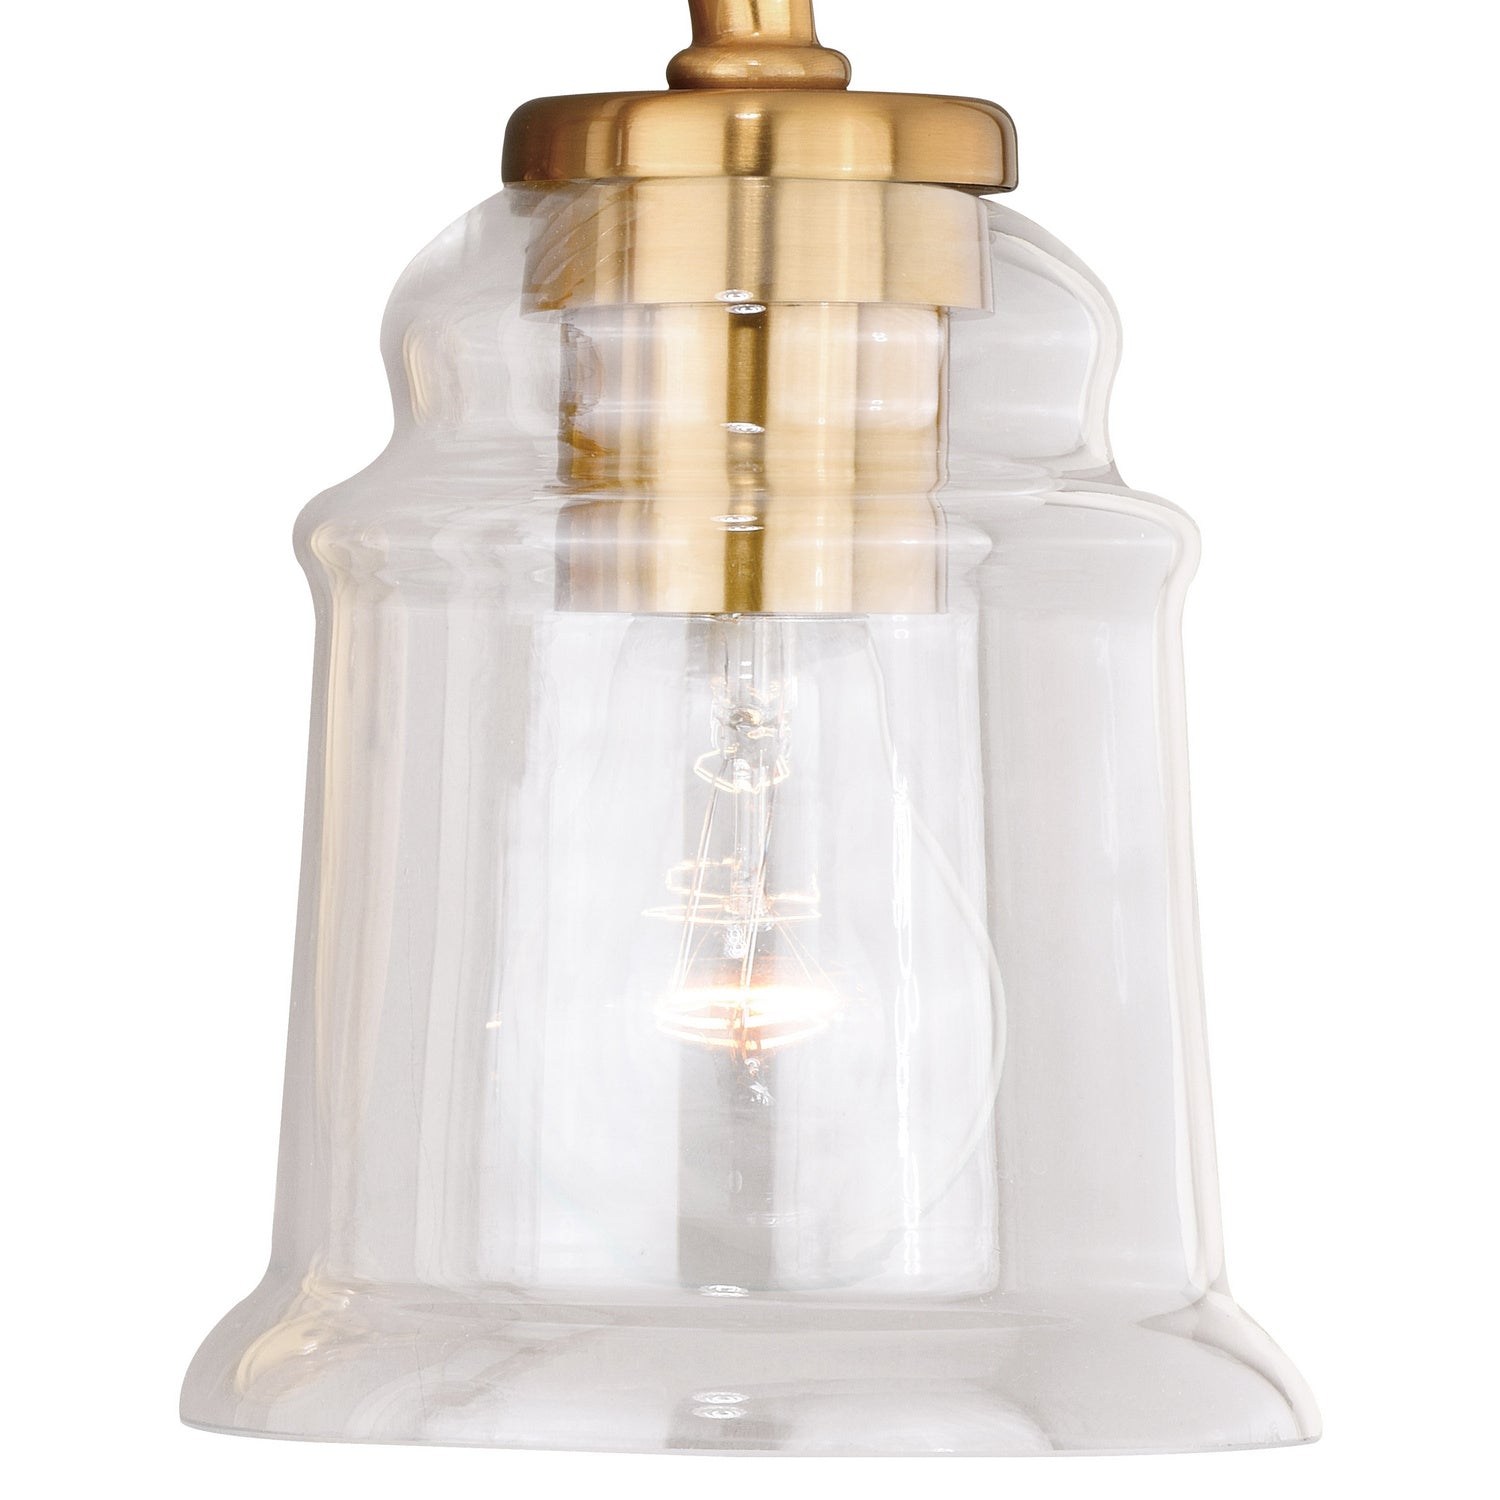 Vaxcel Toledo W0263 Bath Vanity Light 15 in. wide - Natural Brass